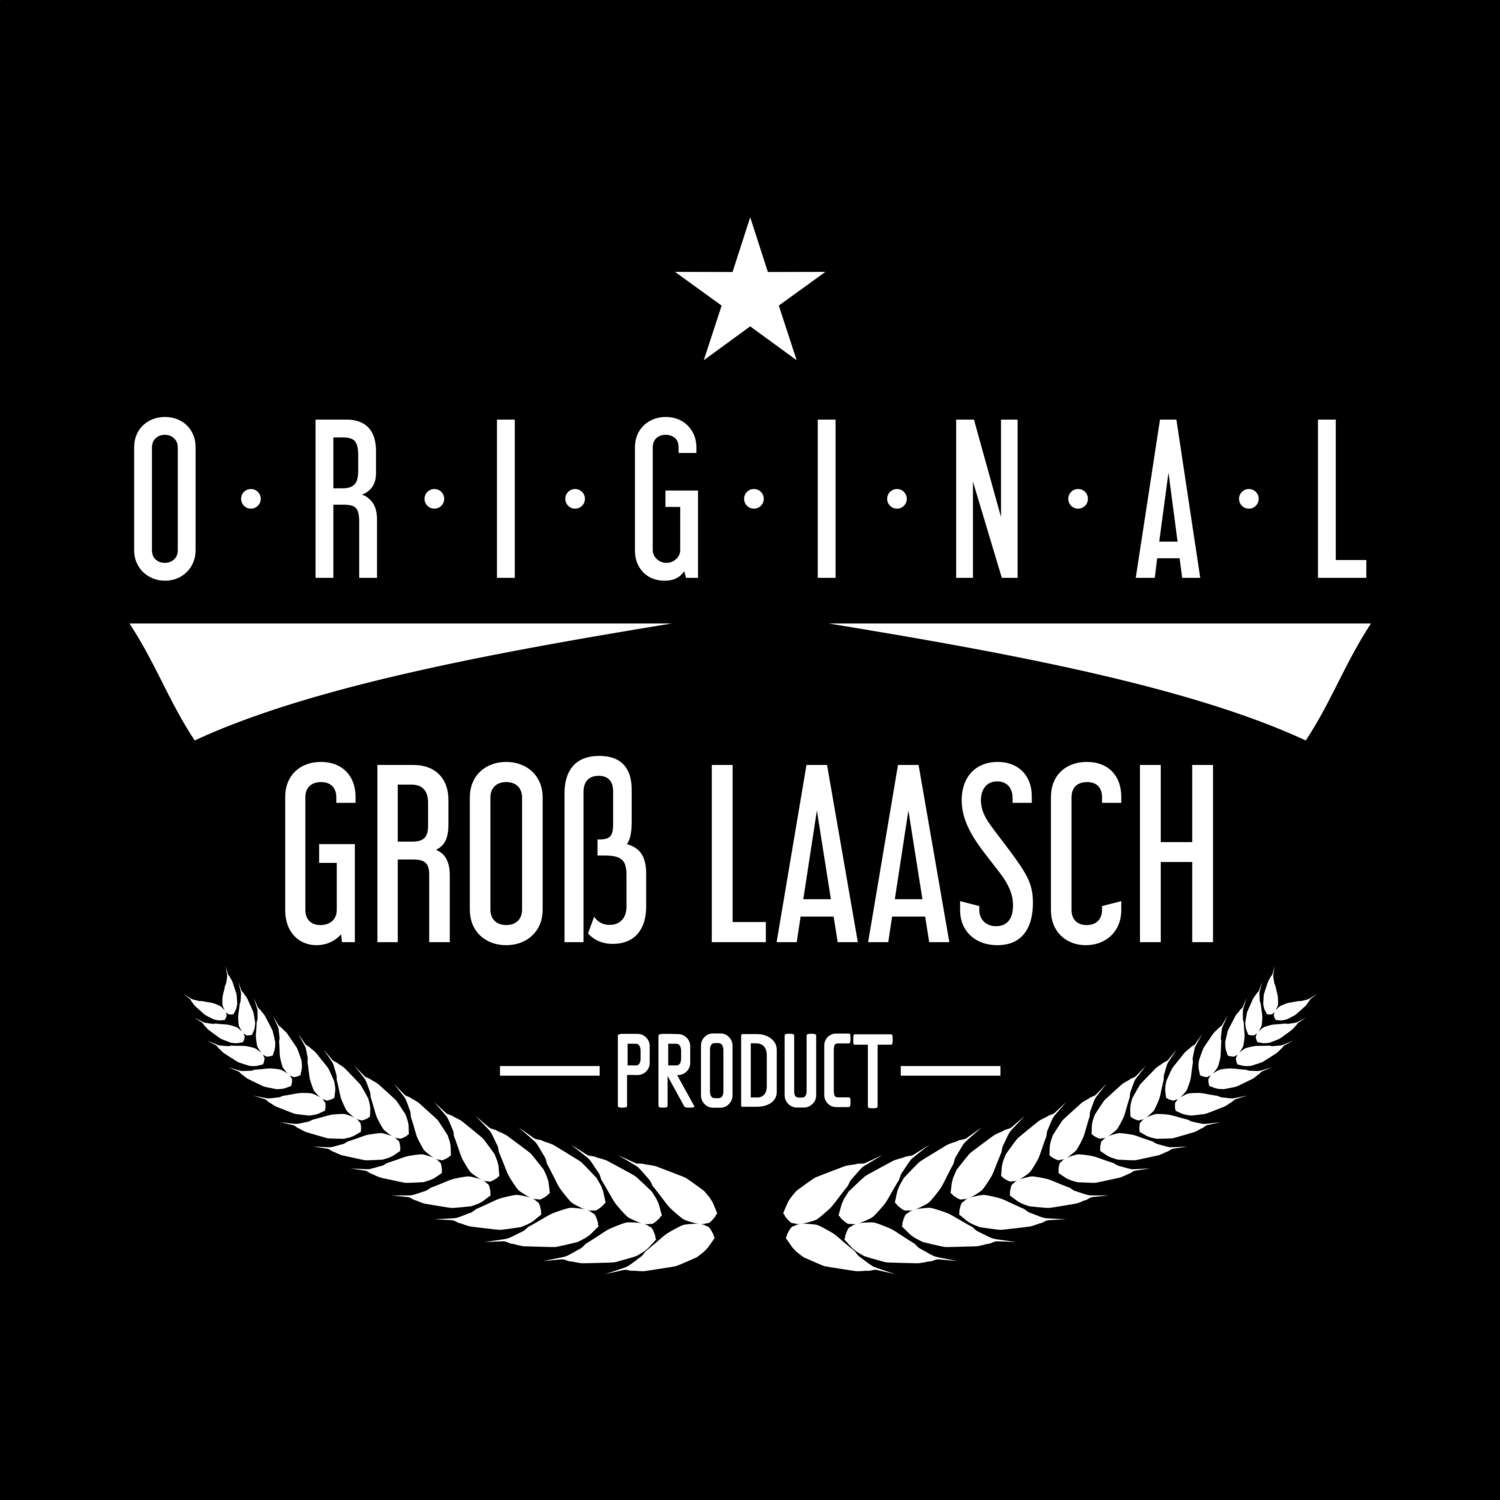 Groß Laasch T-Shirt »Original Product«